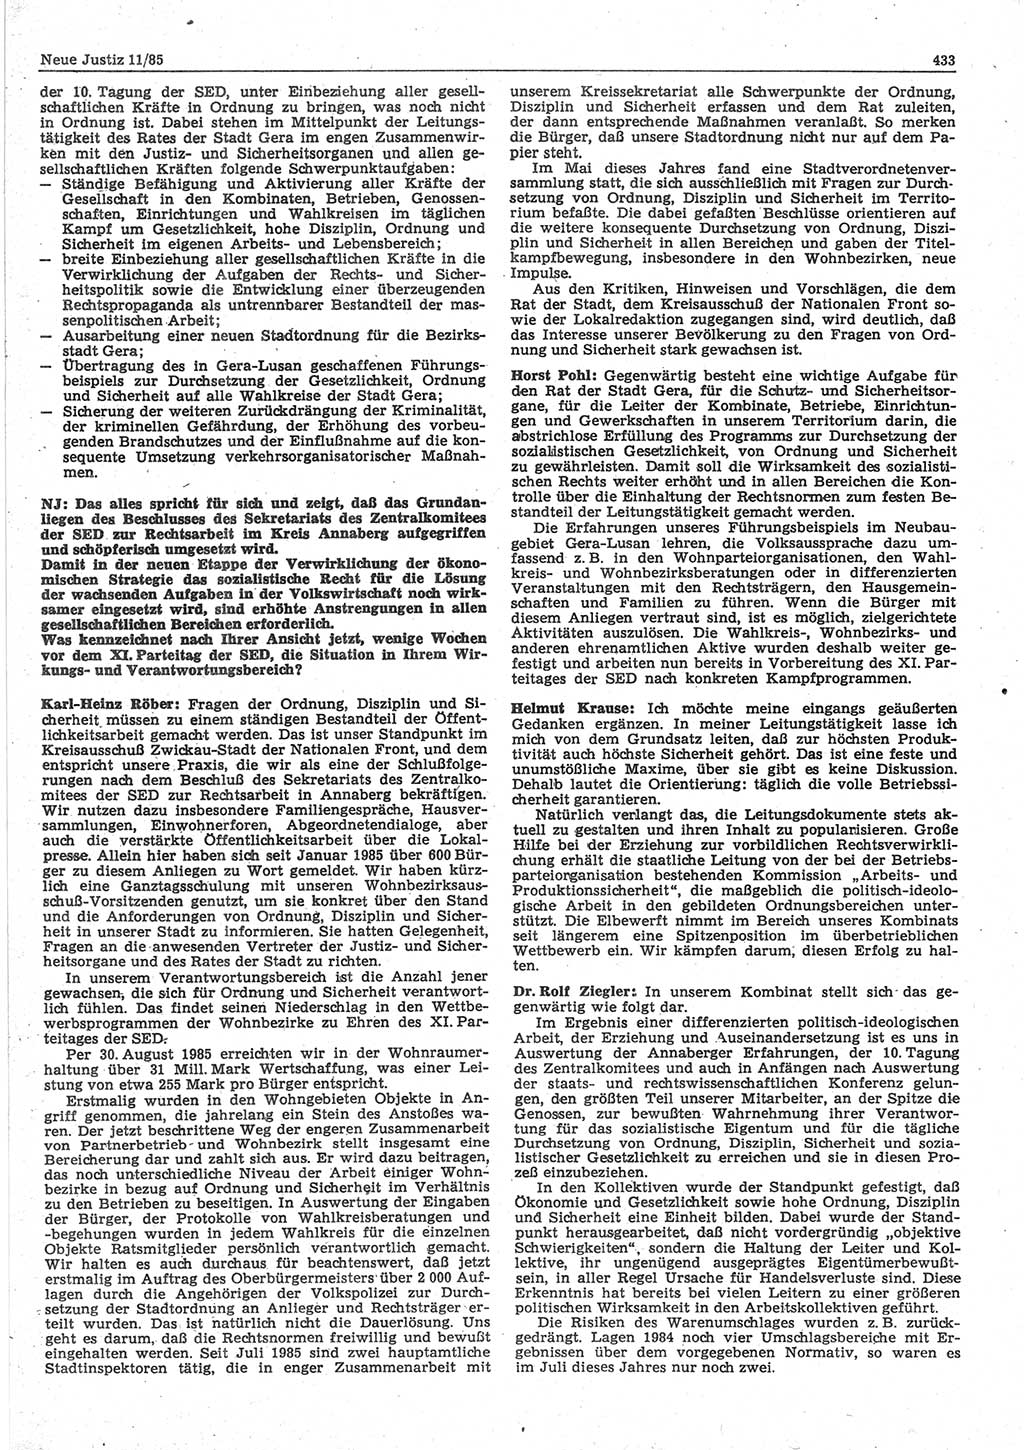 Neue Justiz (NJ), Zeitschrift für sozialistisches Recht und Gesetzlichkeit [Deutsche Demokratische Republik (DDR)], 39. Jahrgang 1985, Seite 433 (NJ DDR 1985, S. 433)